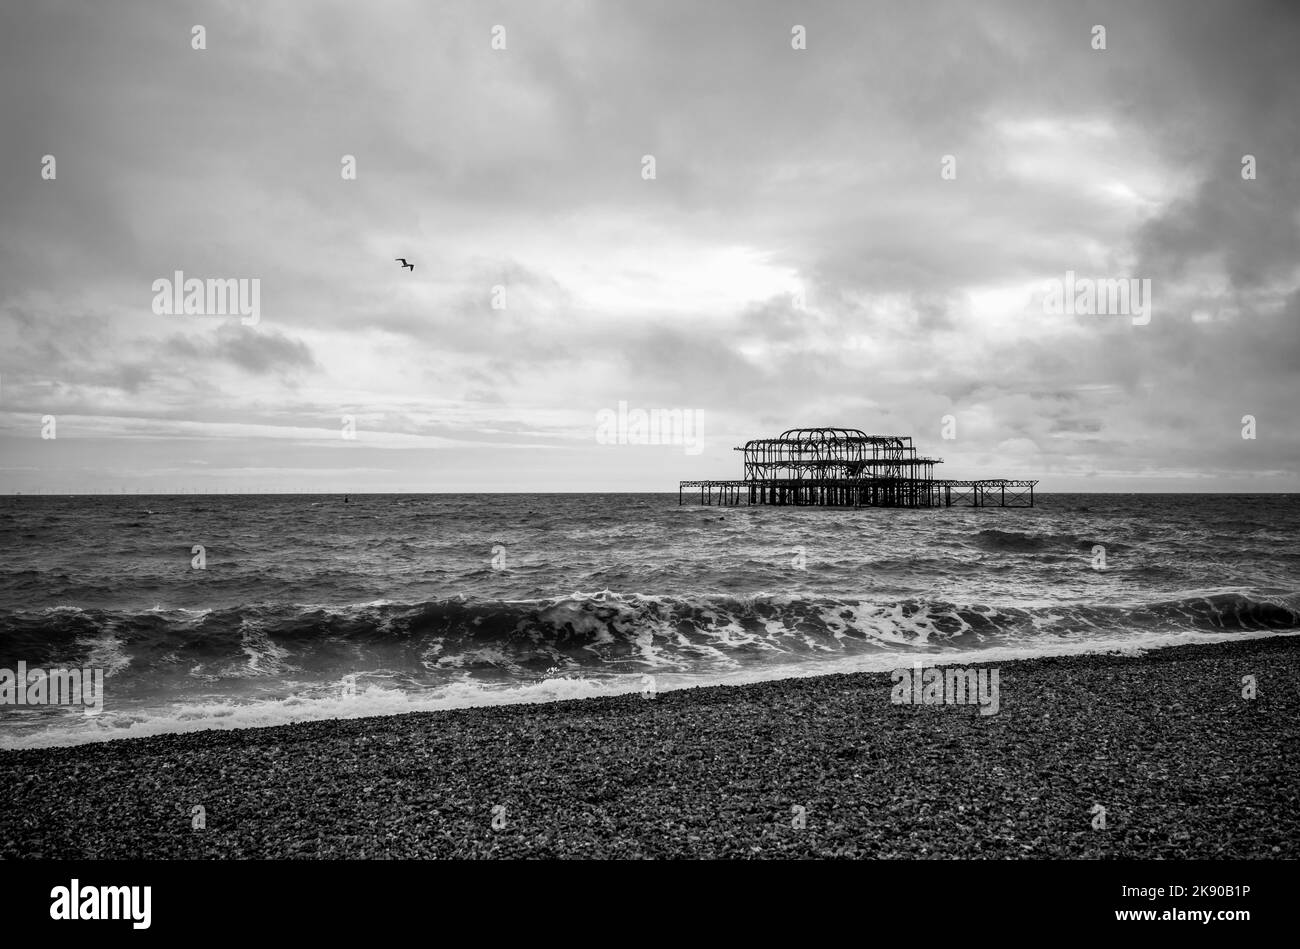 Les vestiges de West Pier à Brighton pendant le temps de tempête en noir et blanc, Brighton Beach, East Sussex, Angleterre, Royaume-Uni Banque D'Images